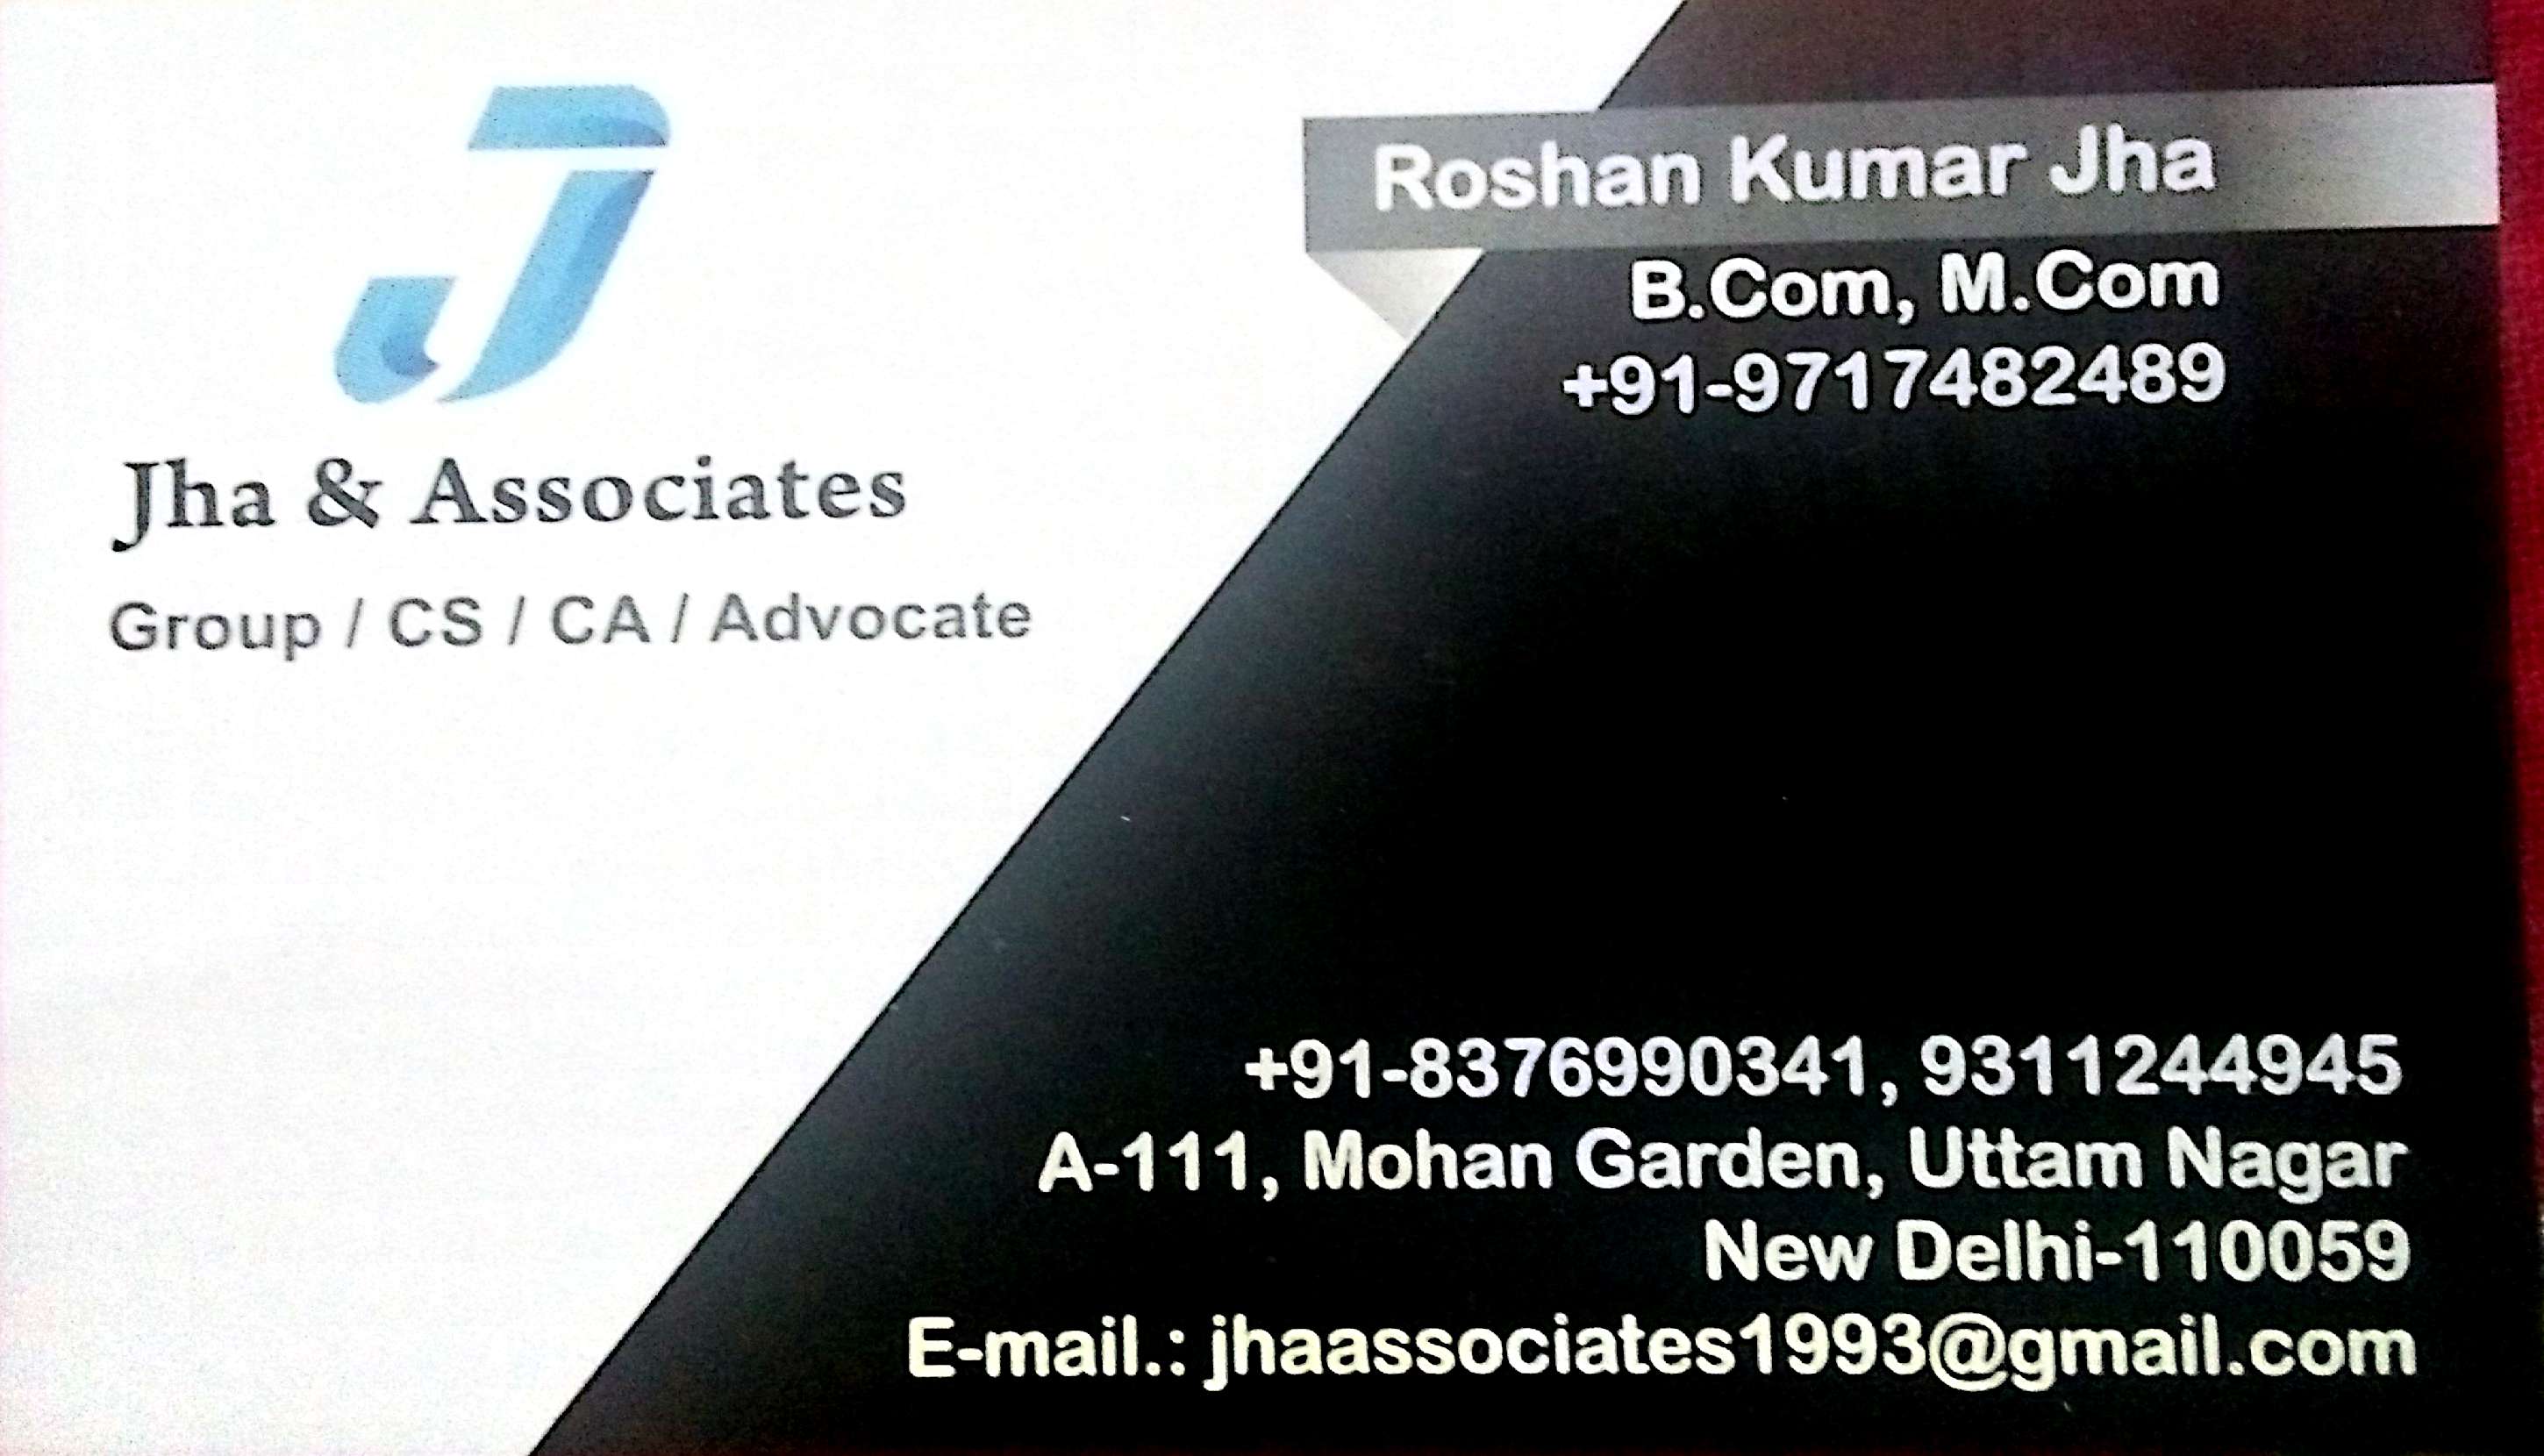 Company Law ConsultantsServicesTaxation - AuditWest DelhiUttam Nagar